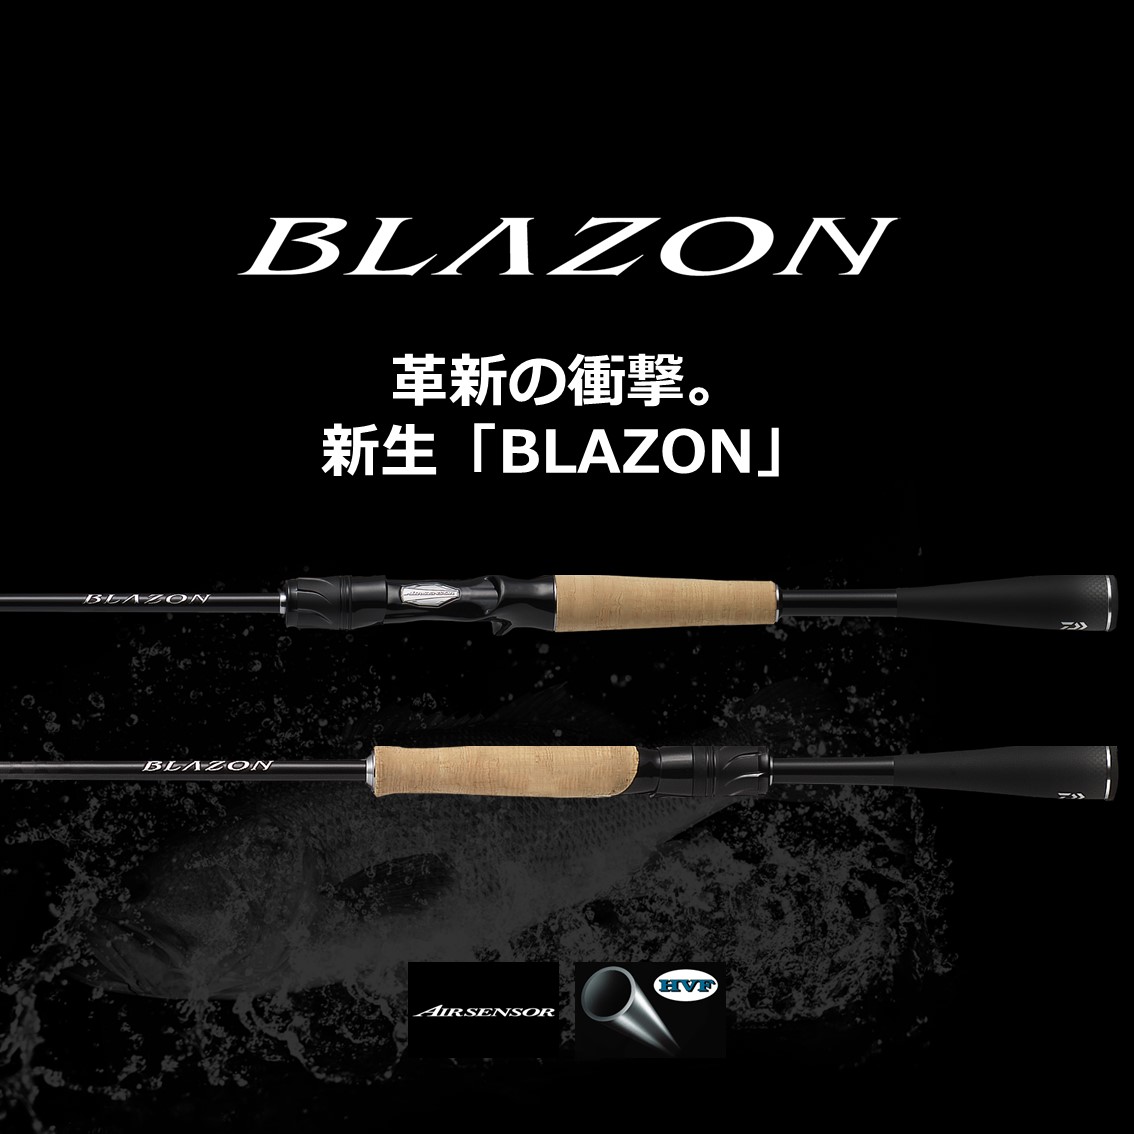 ダイワ ブレイゾン C70XH-2 (バスロッド ベイト) - 釣り具の販売、通販 